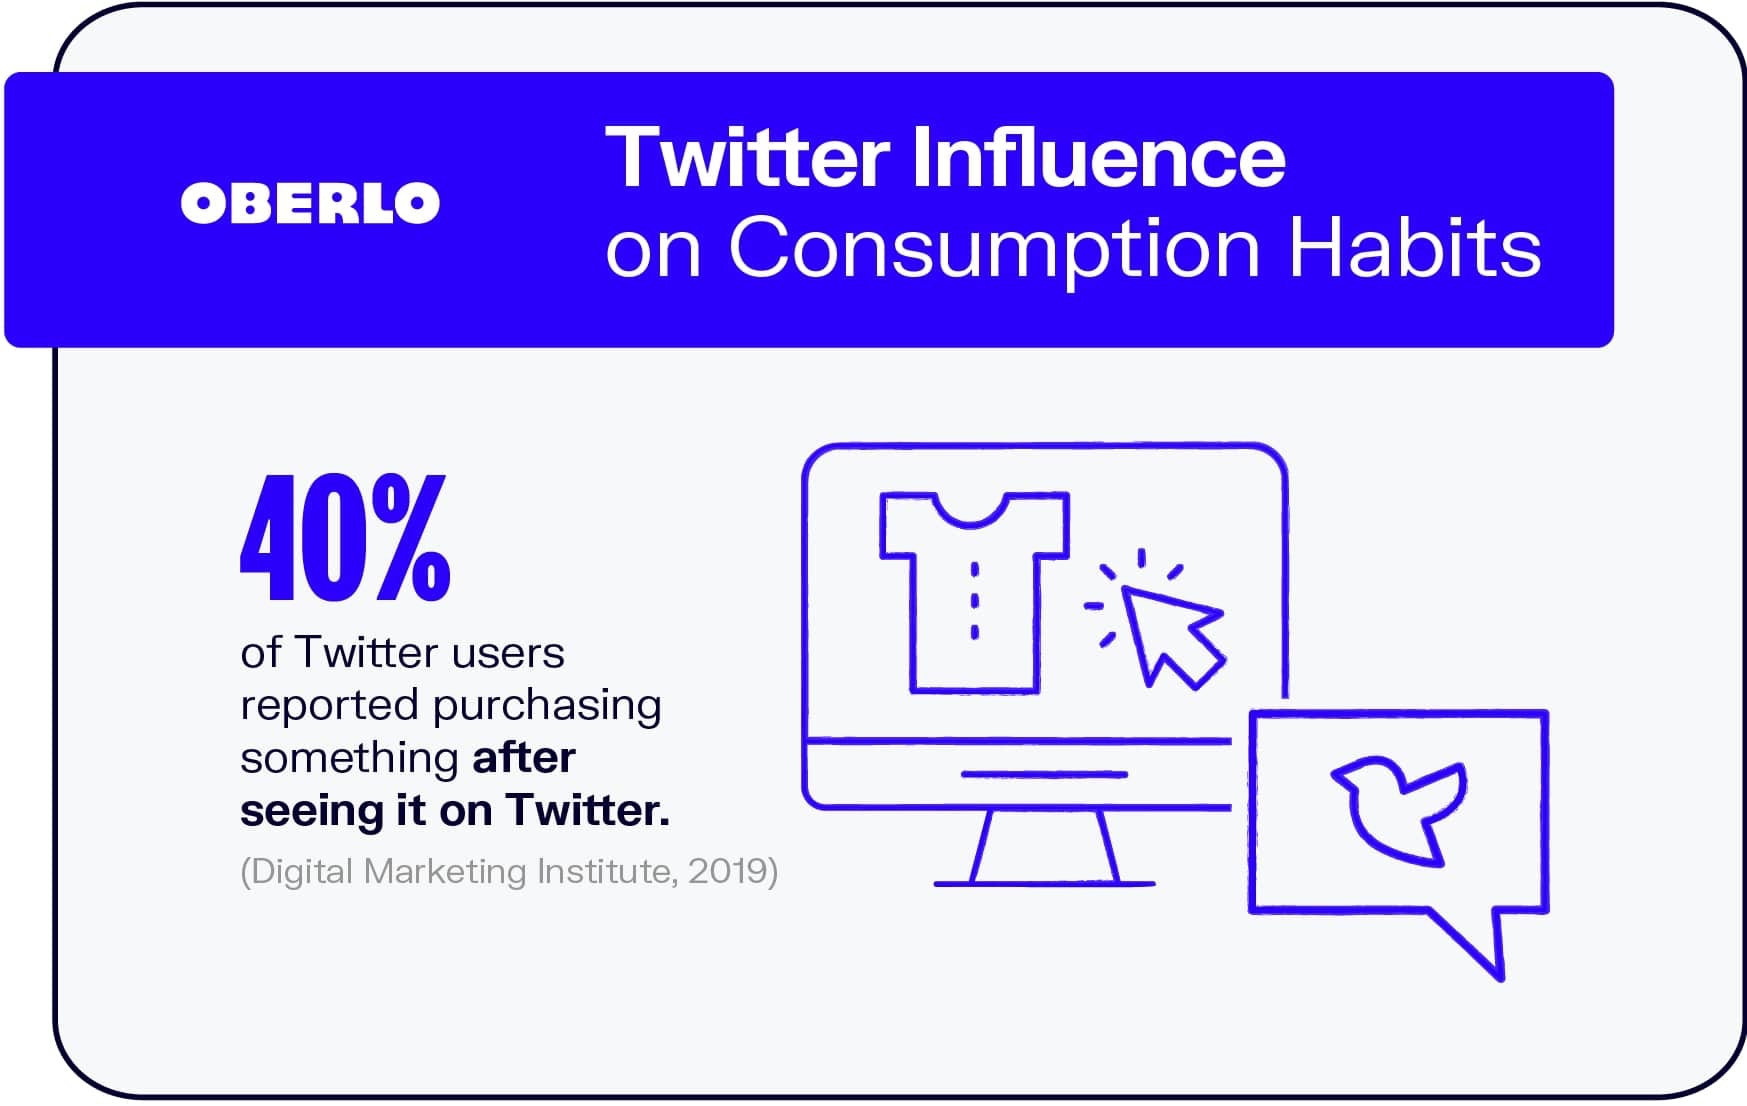 Influencia de Twitter en los hábitos de consumo